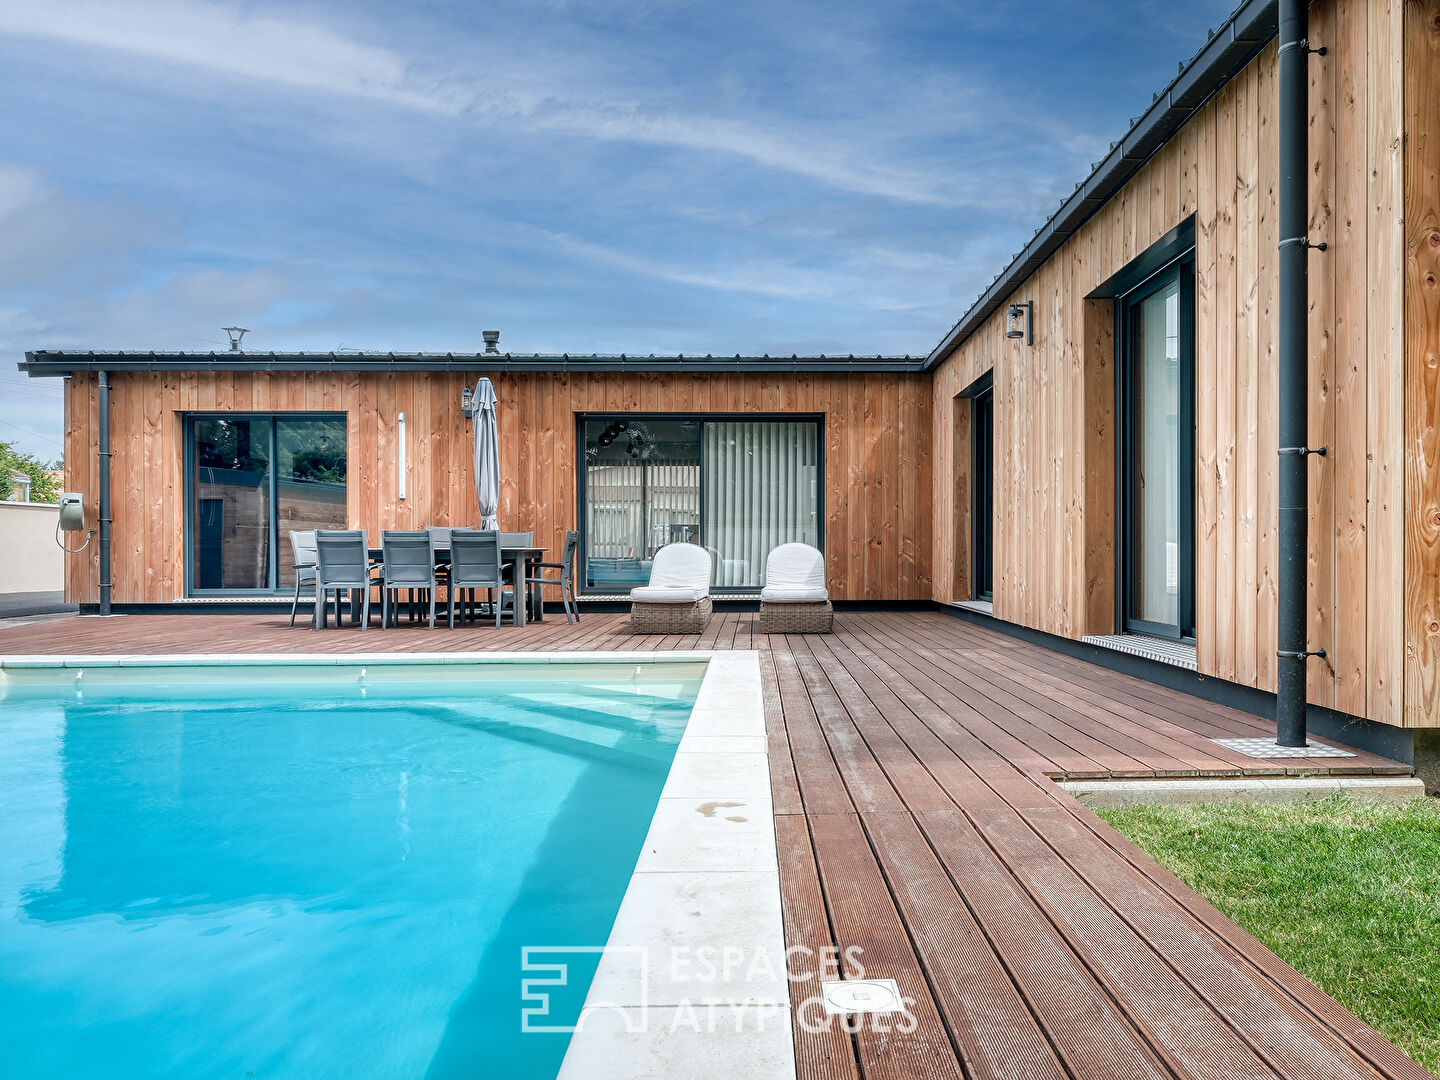 Maison en bois avec piscine